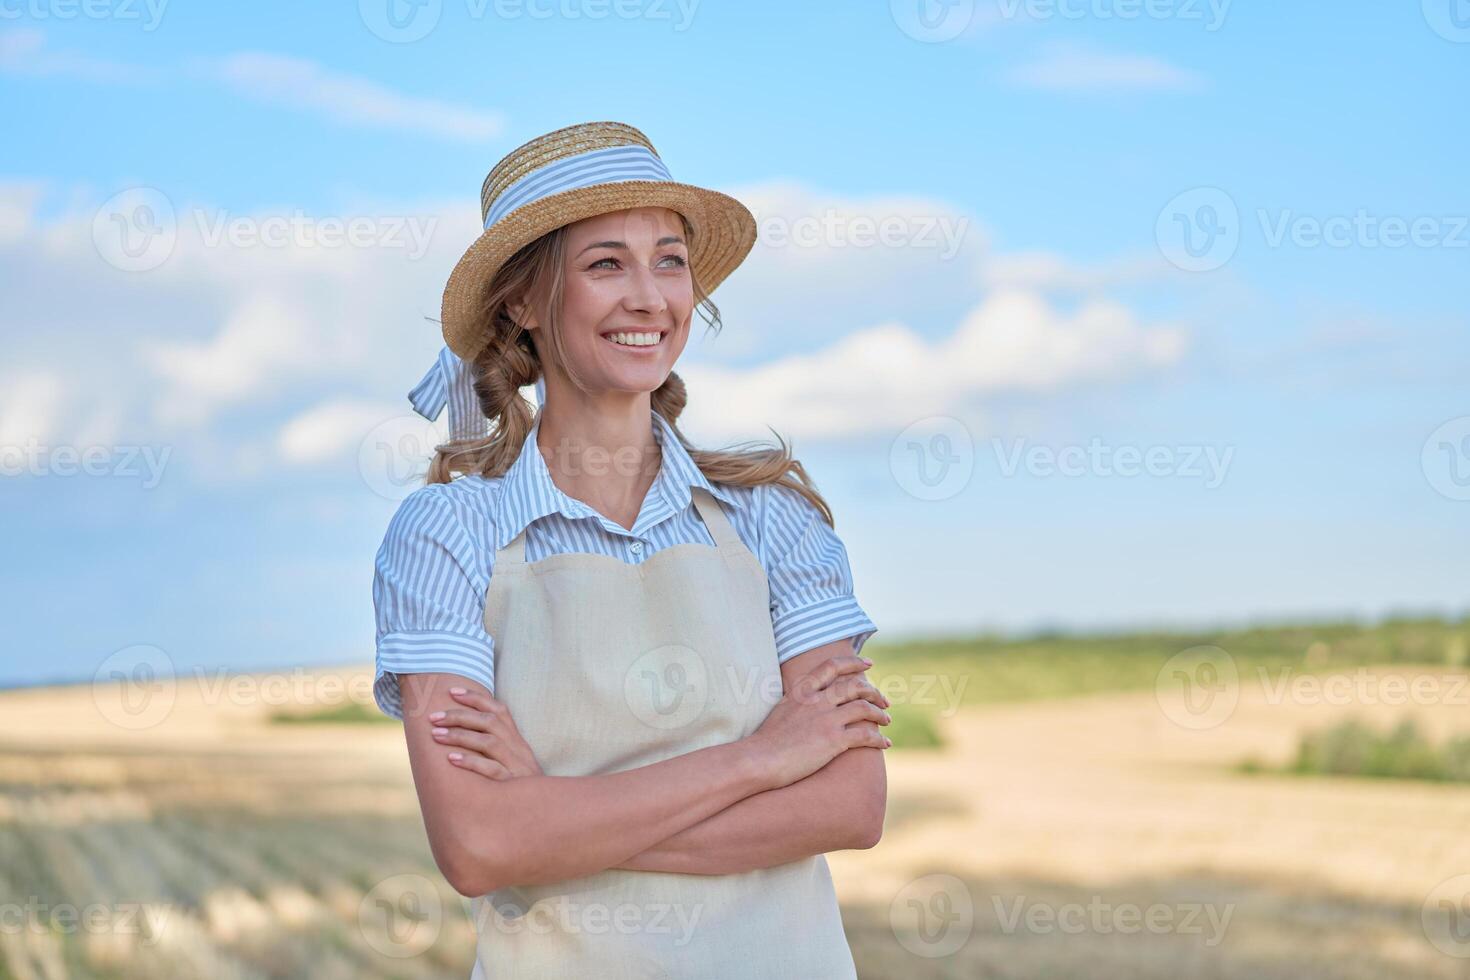 mujer granjero Paja sombrero delantal en pie tierras de cultivo sonriente hembra agrónomo especialista agricultura agronegocios contento positivo caucásico trabajador agrícola campo foto